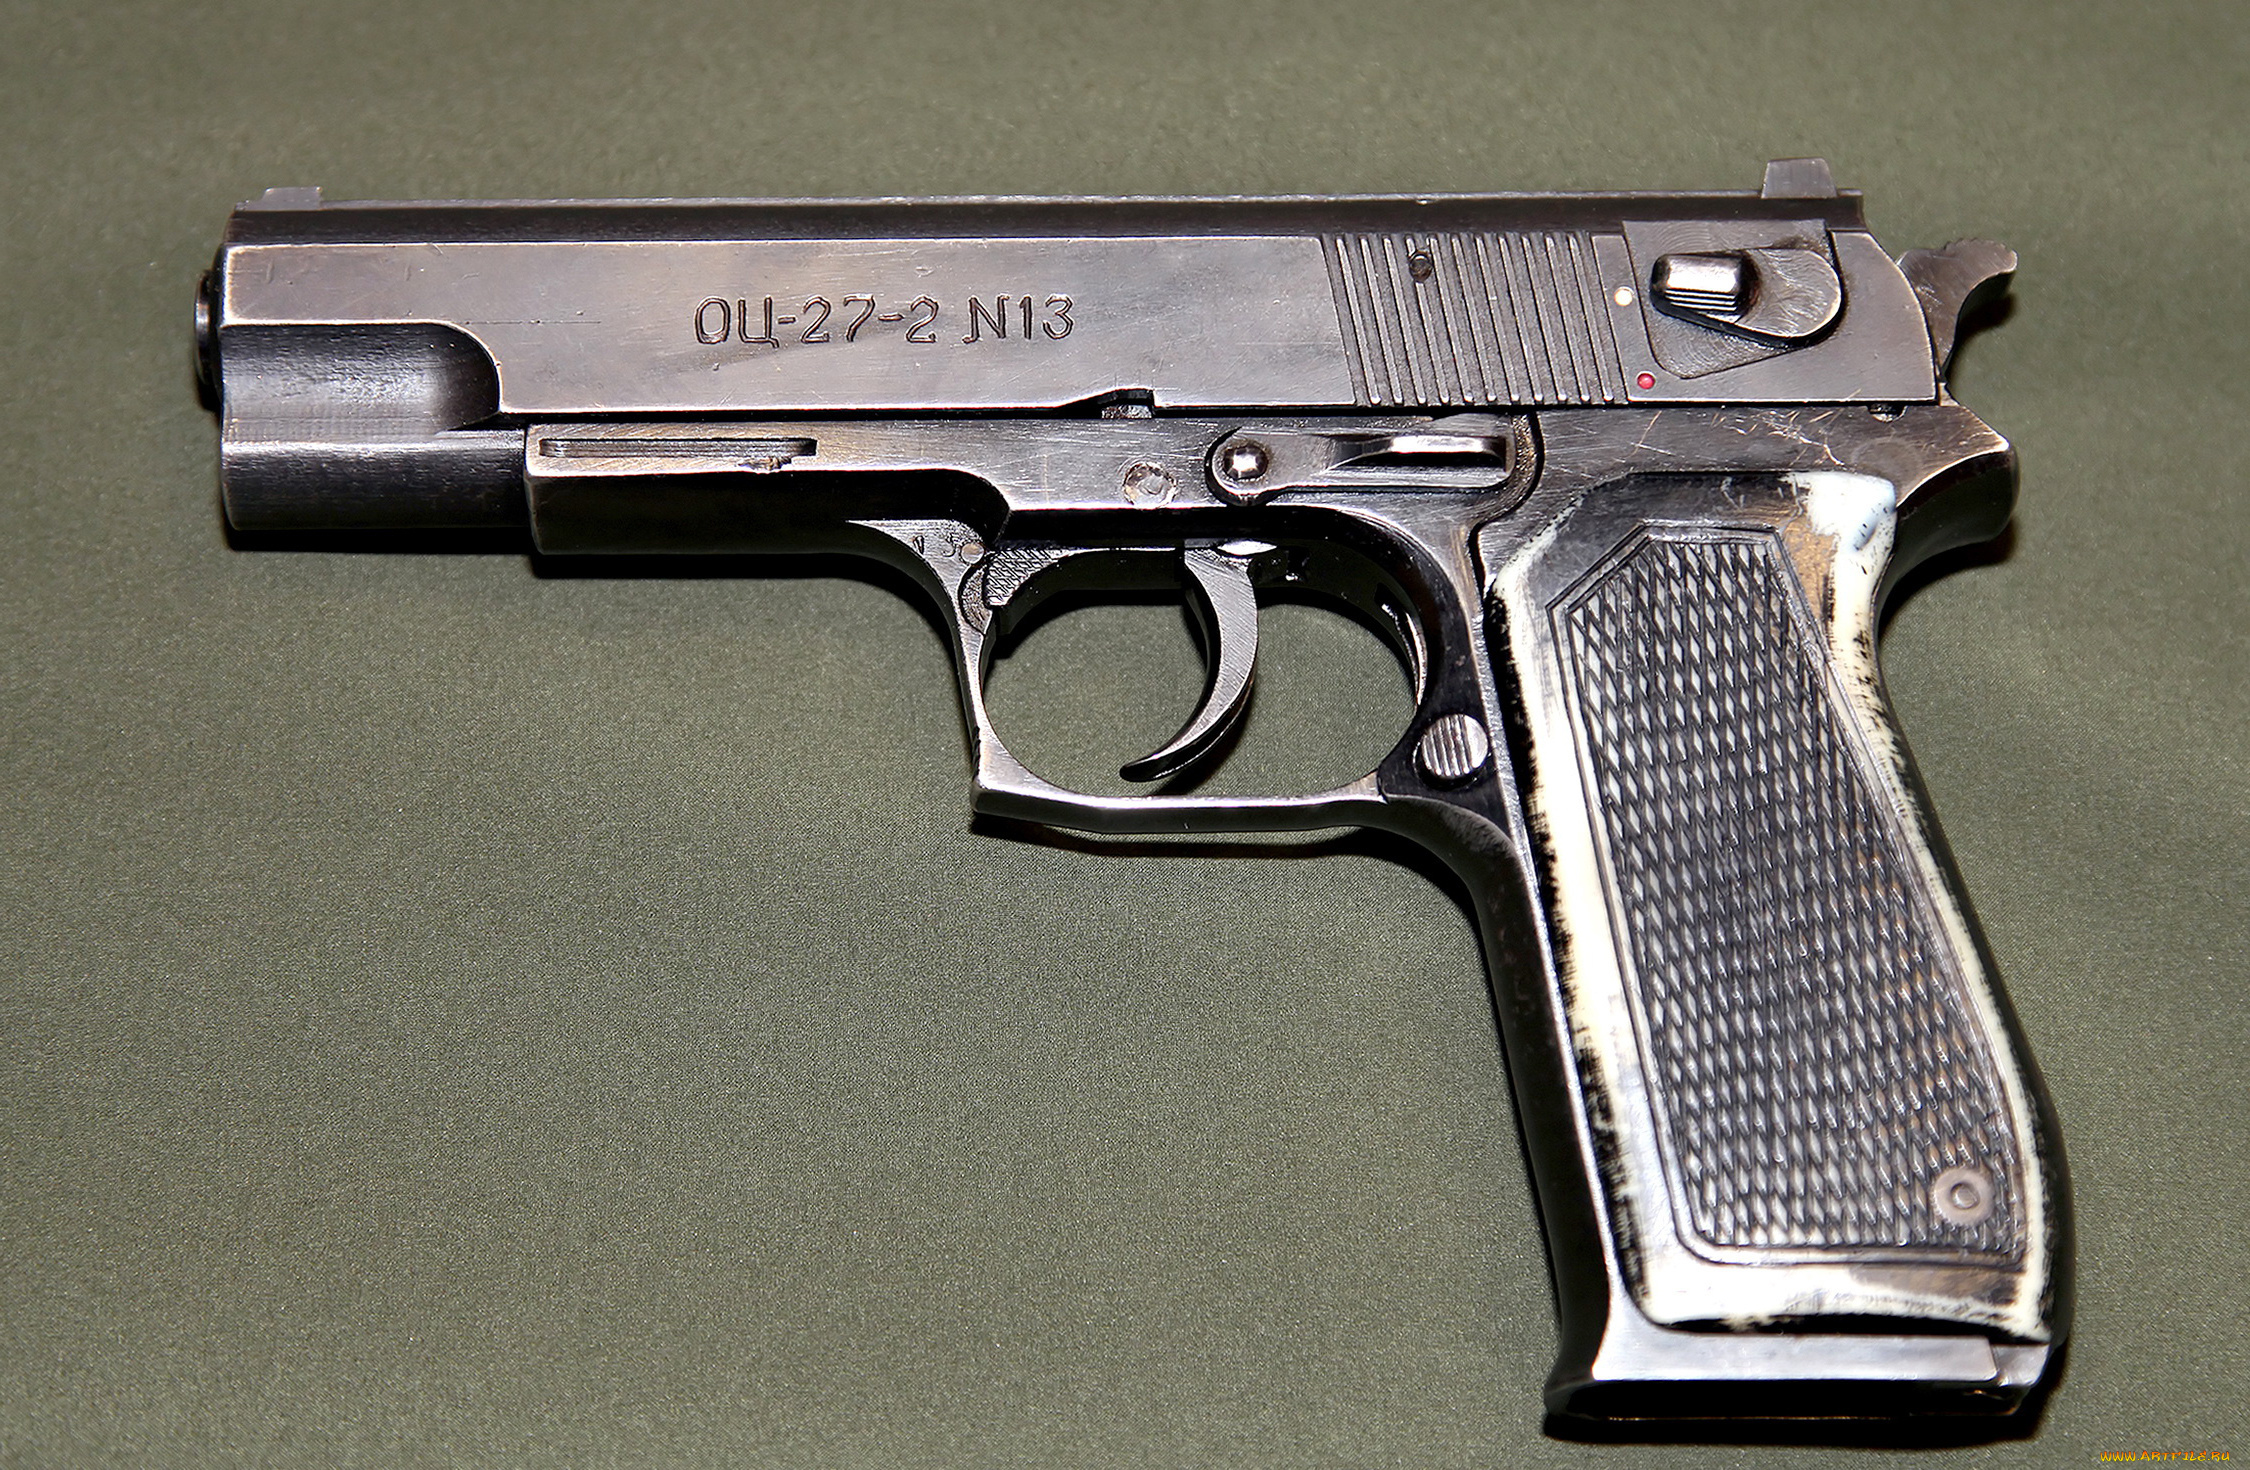 оц-27-2, оружие, пистолеты, абрамов, пистолет, калибр, стечкин, бердыш, оц27-2, 9х19